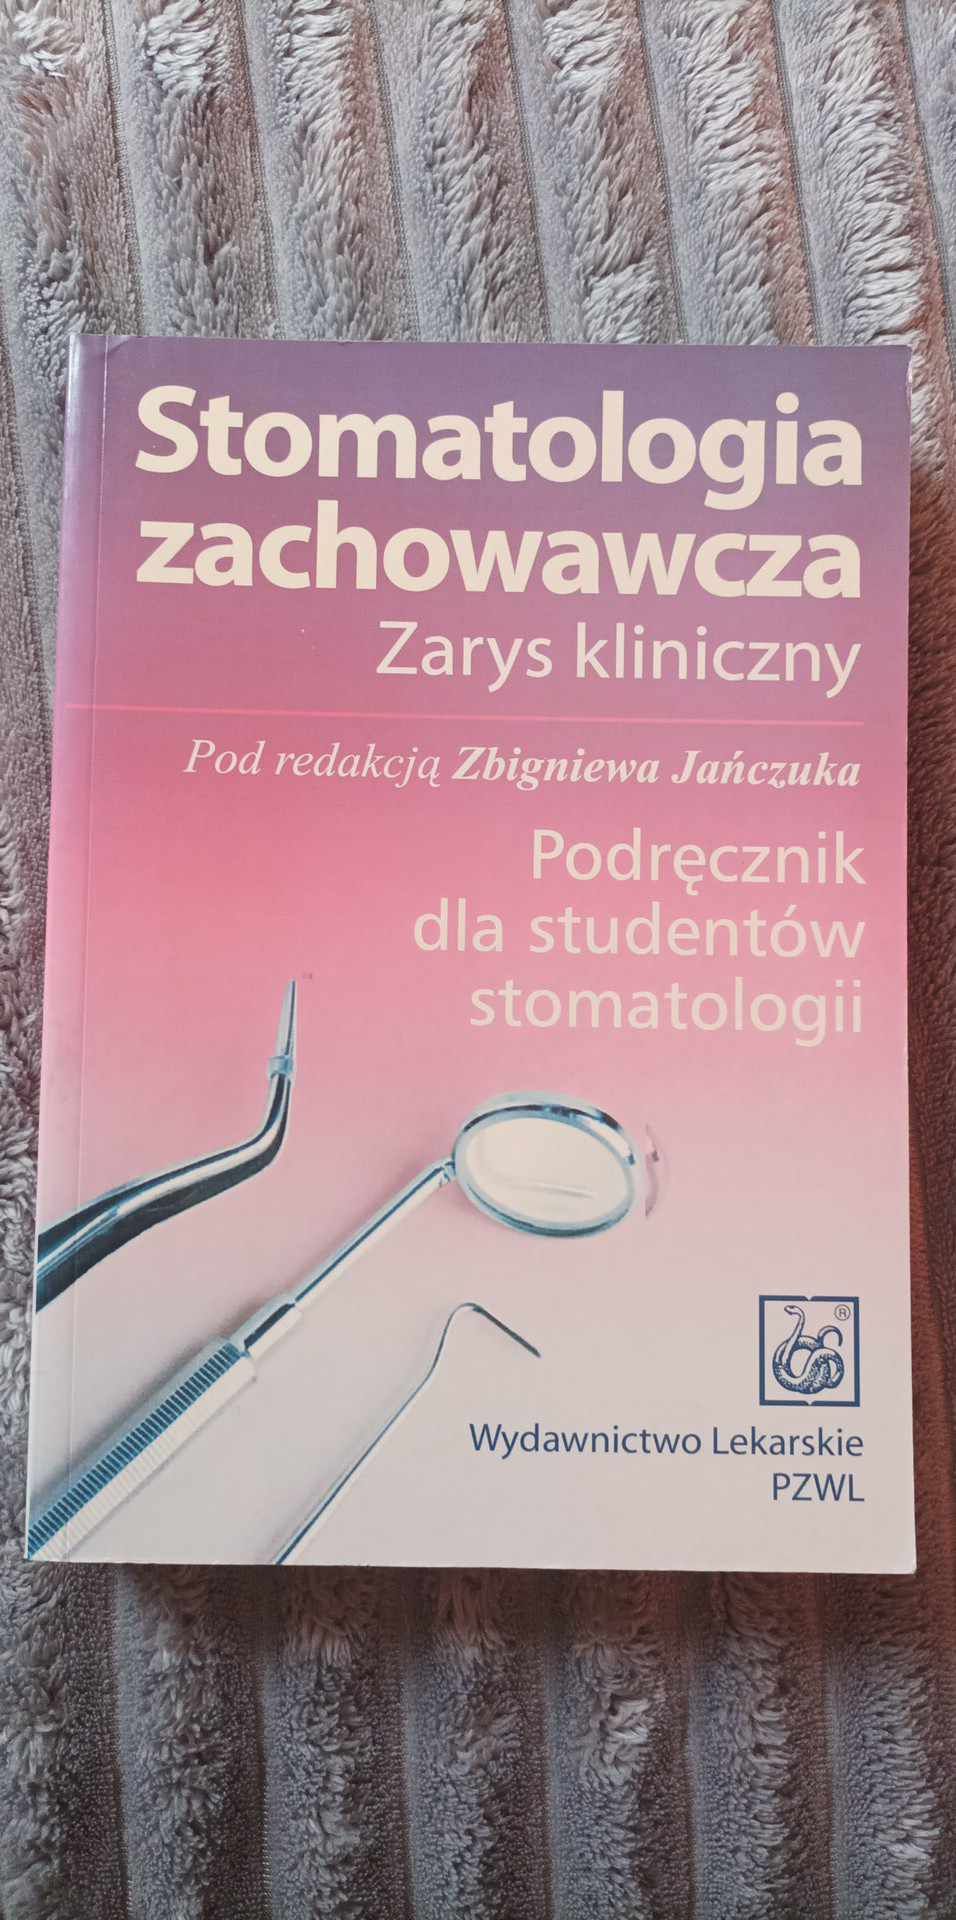 Stomatologia zachowawcza Zbigniew Jańczuk PZWL